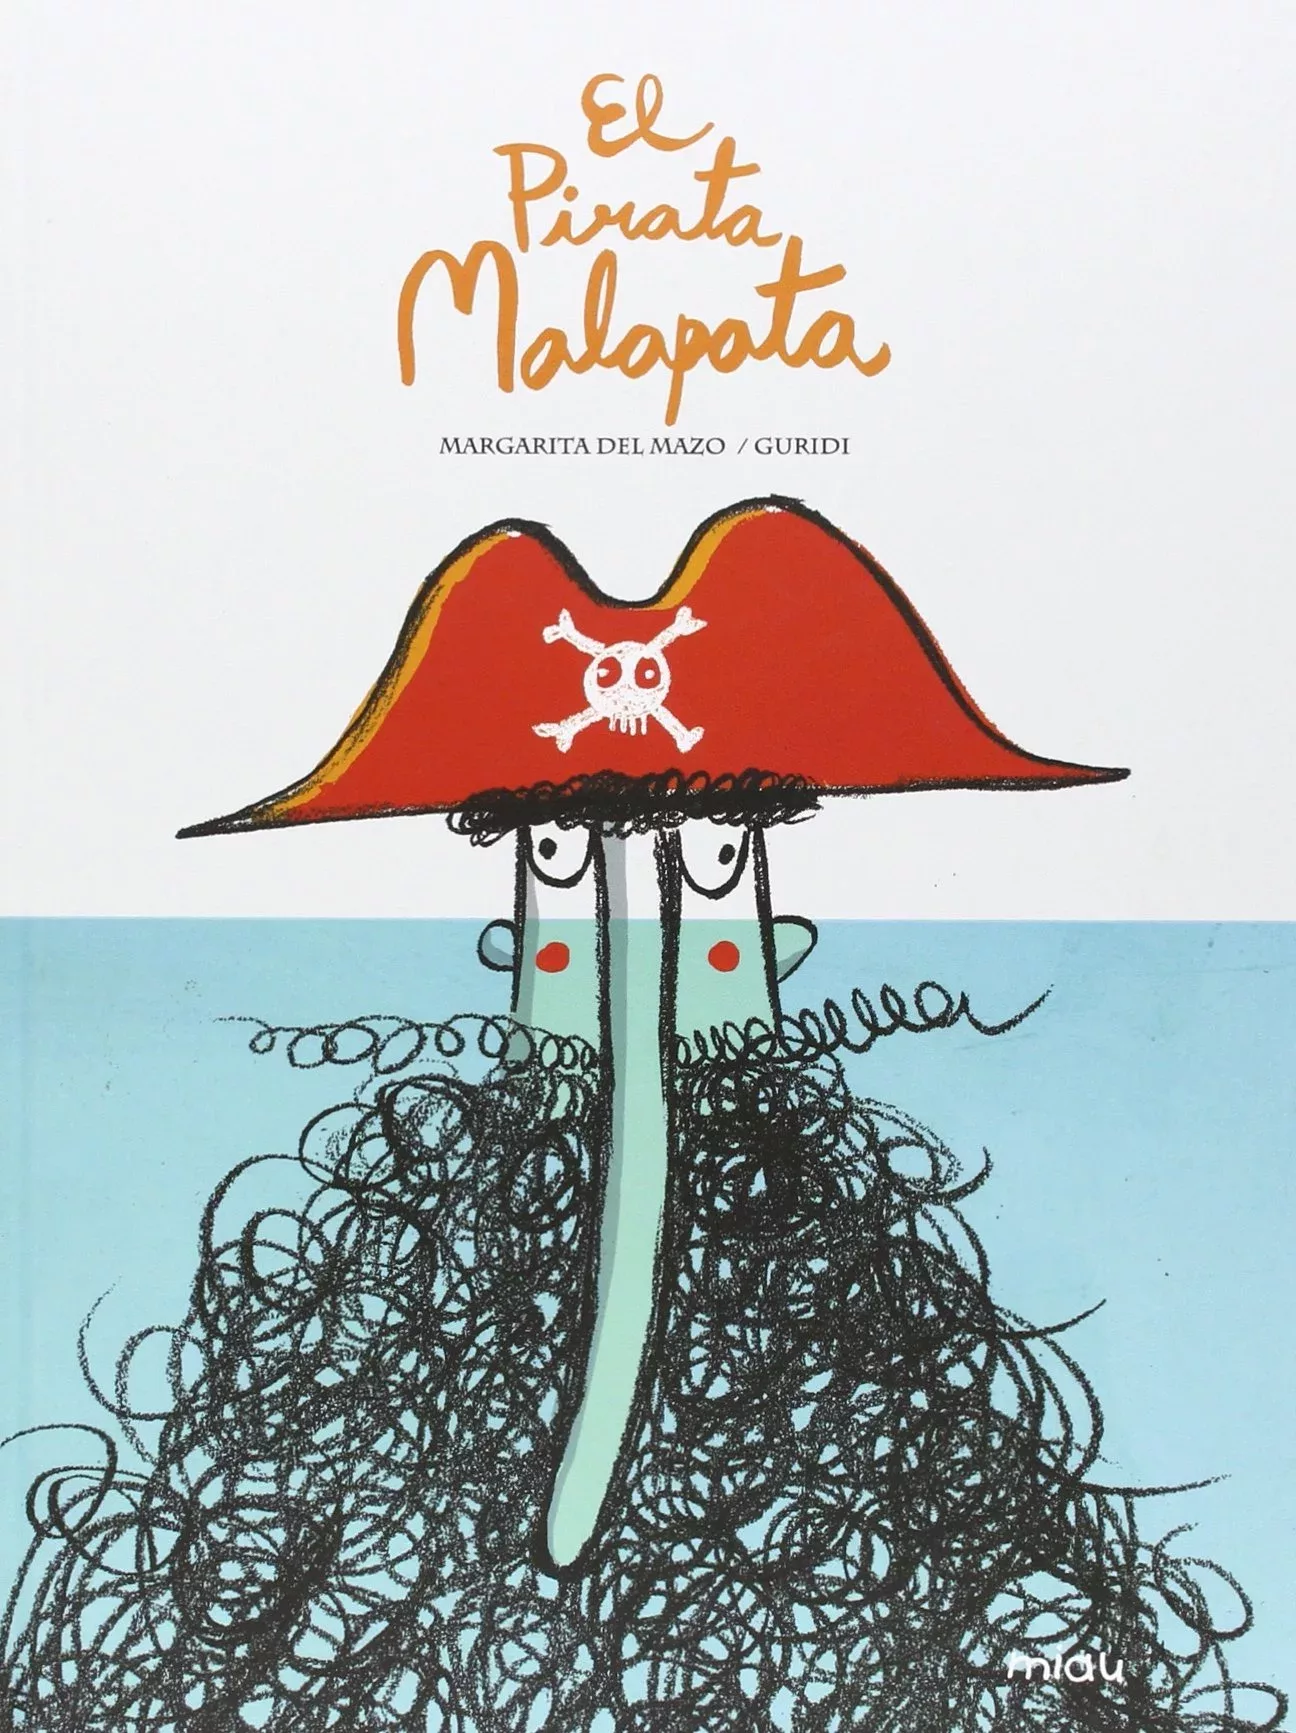 Cover of El pirata Malapata